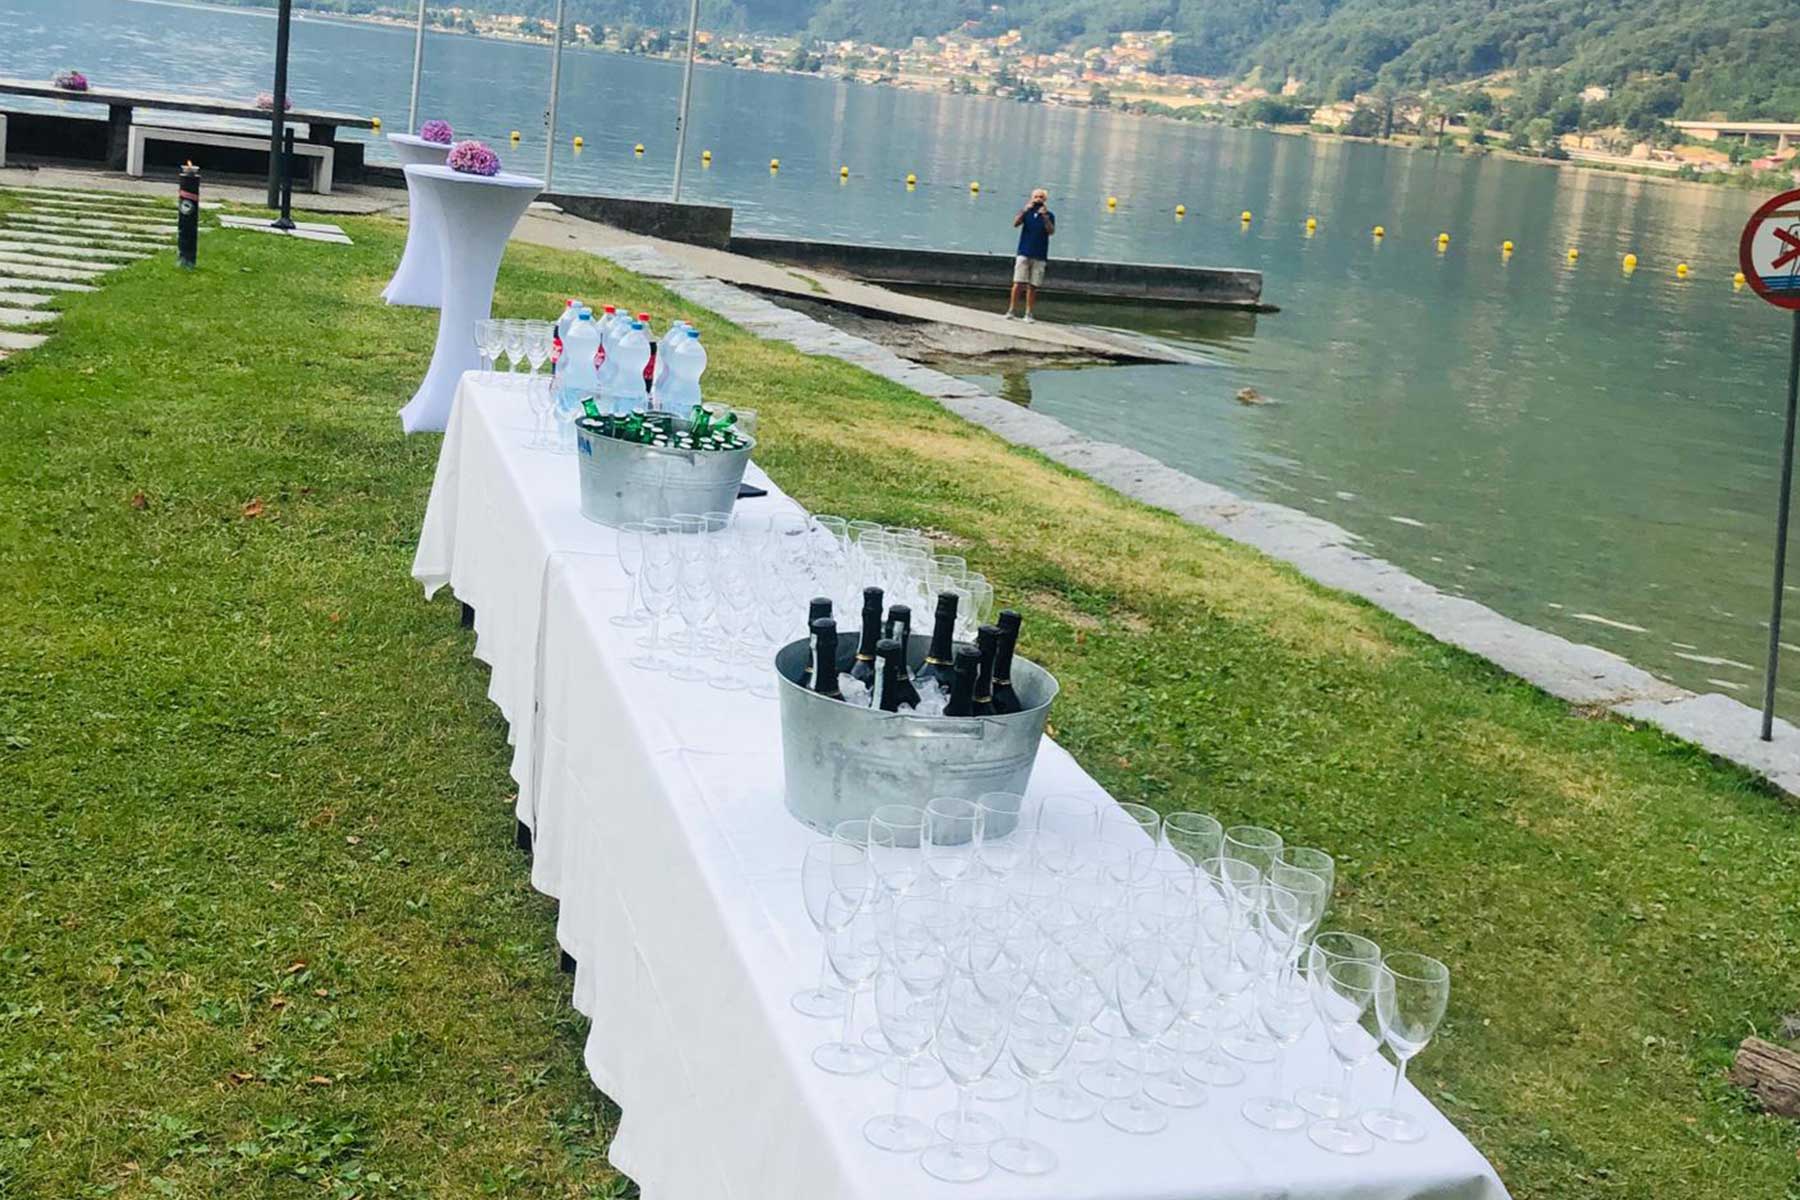 catering mendrisio lugano chiasso locarno ascona sul lago bellinzona